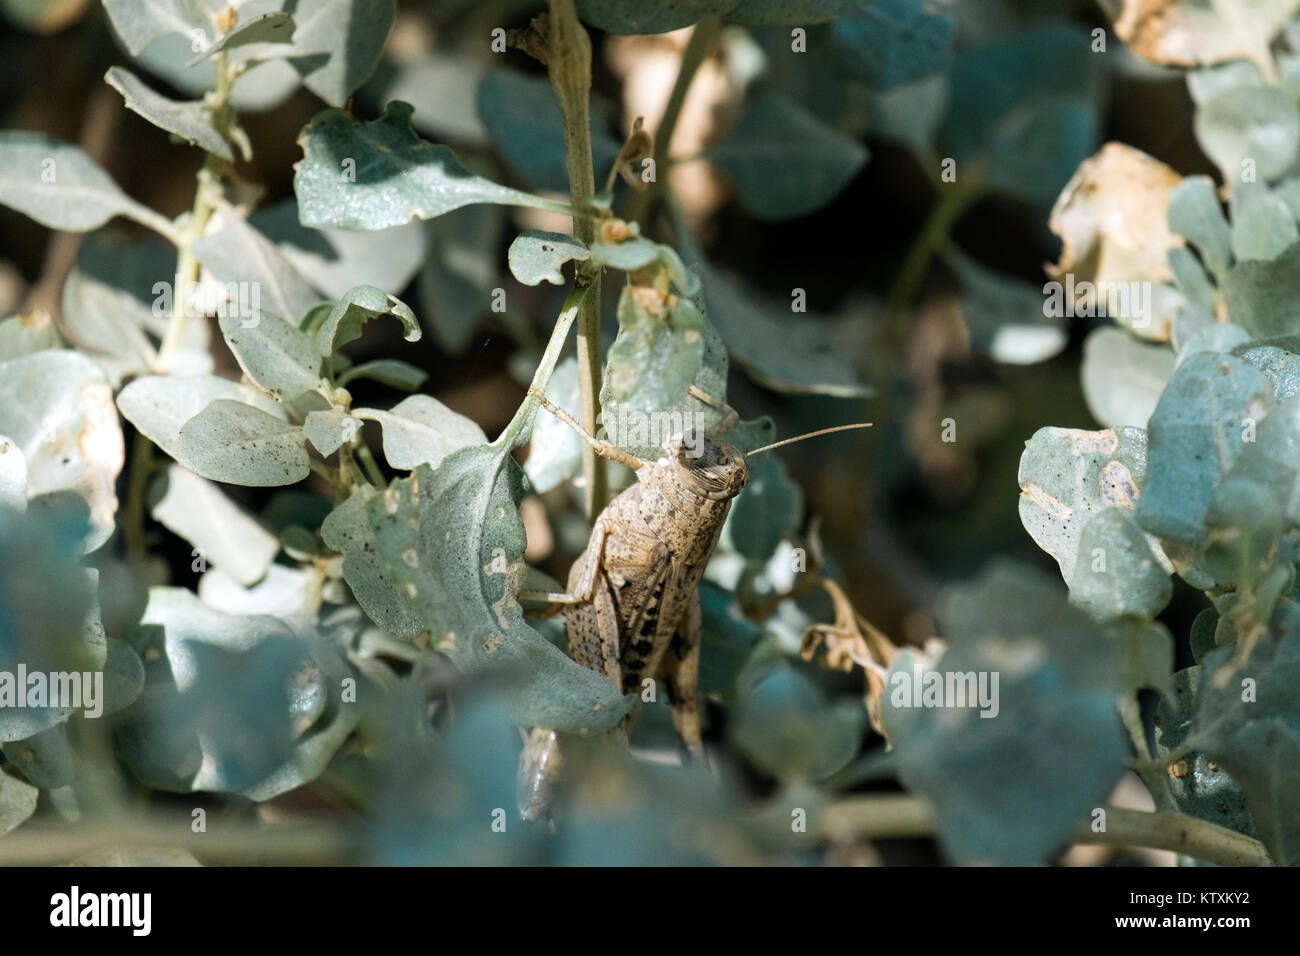 Séance de criquets migrateurs parmi le vert feuillage de la brousse (Locusta migratoria) Banque D'Images